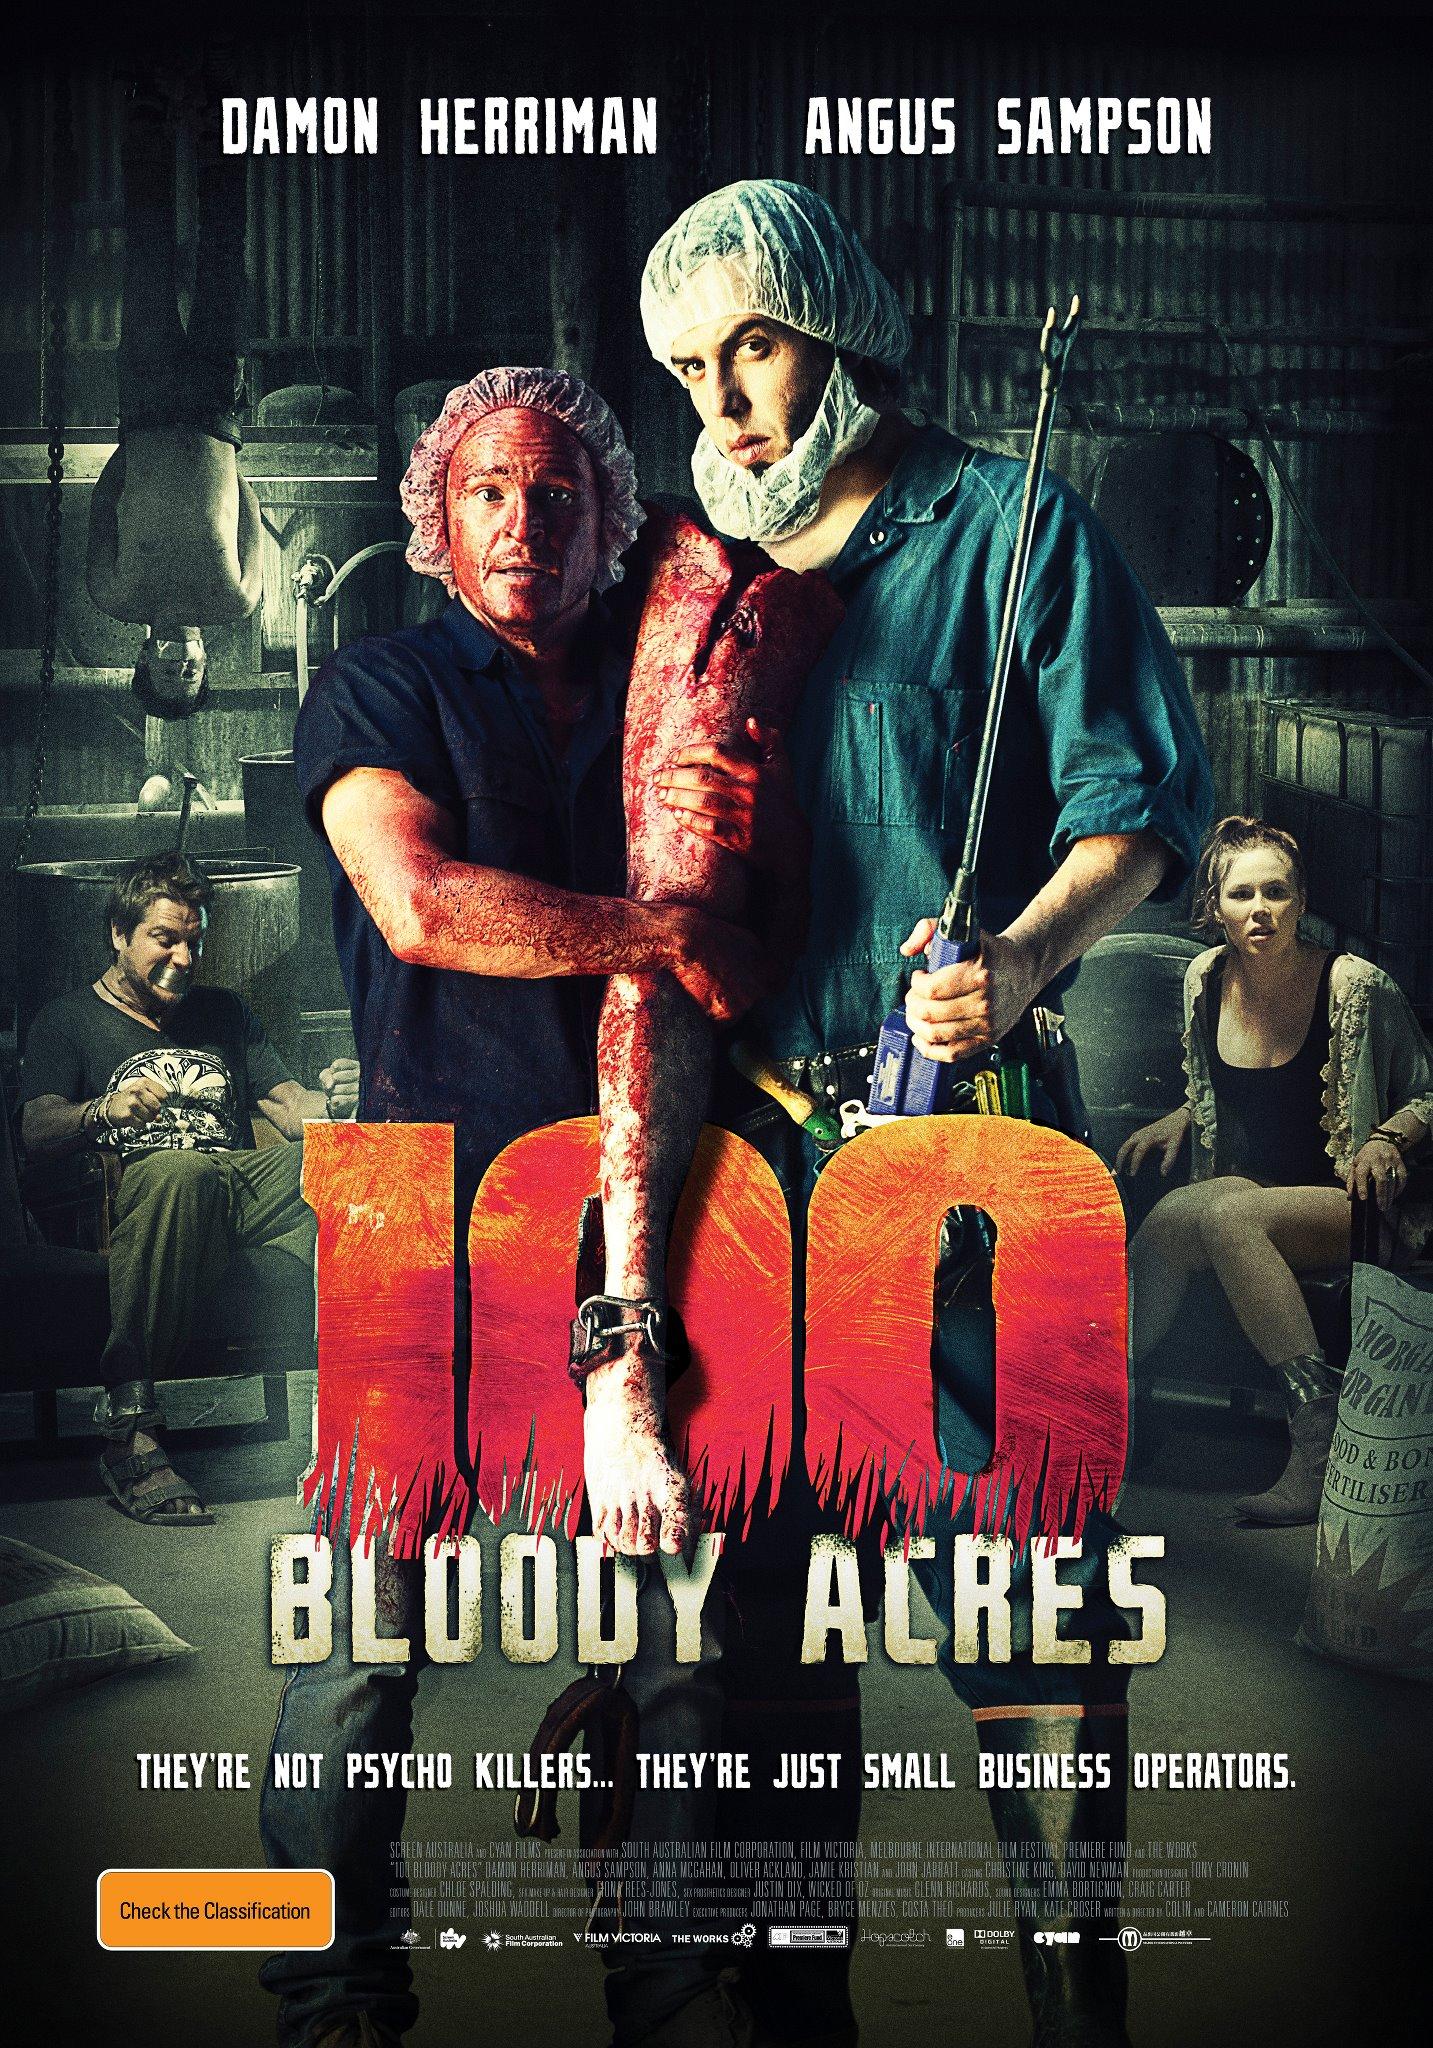 Постер фильма 100 кровавых акров | 100 Bloody Acres